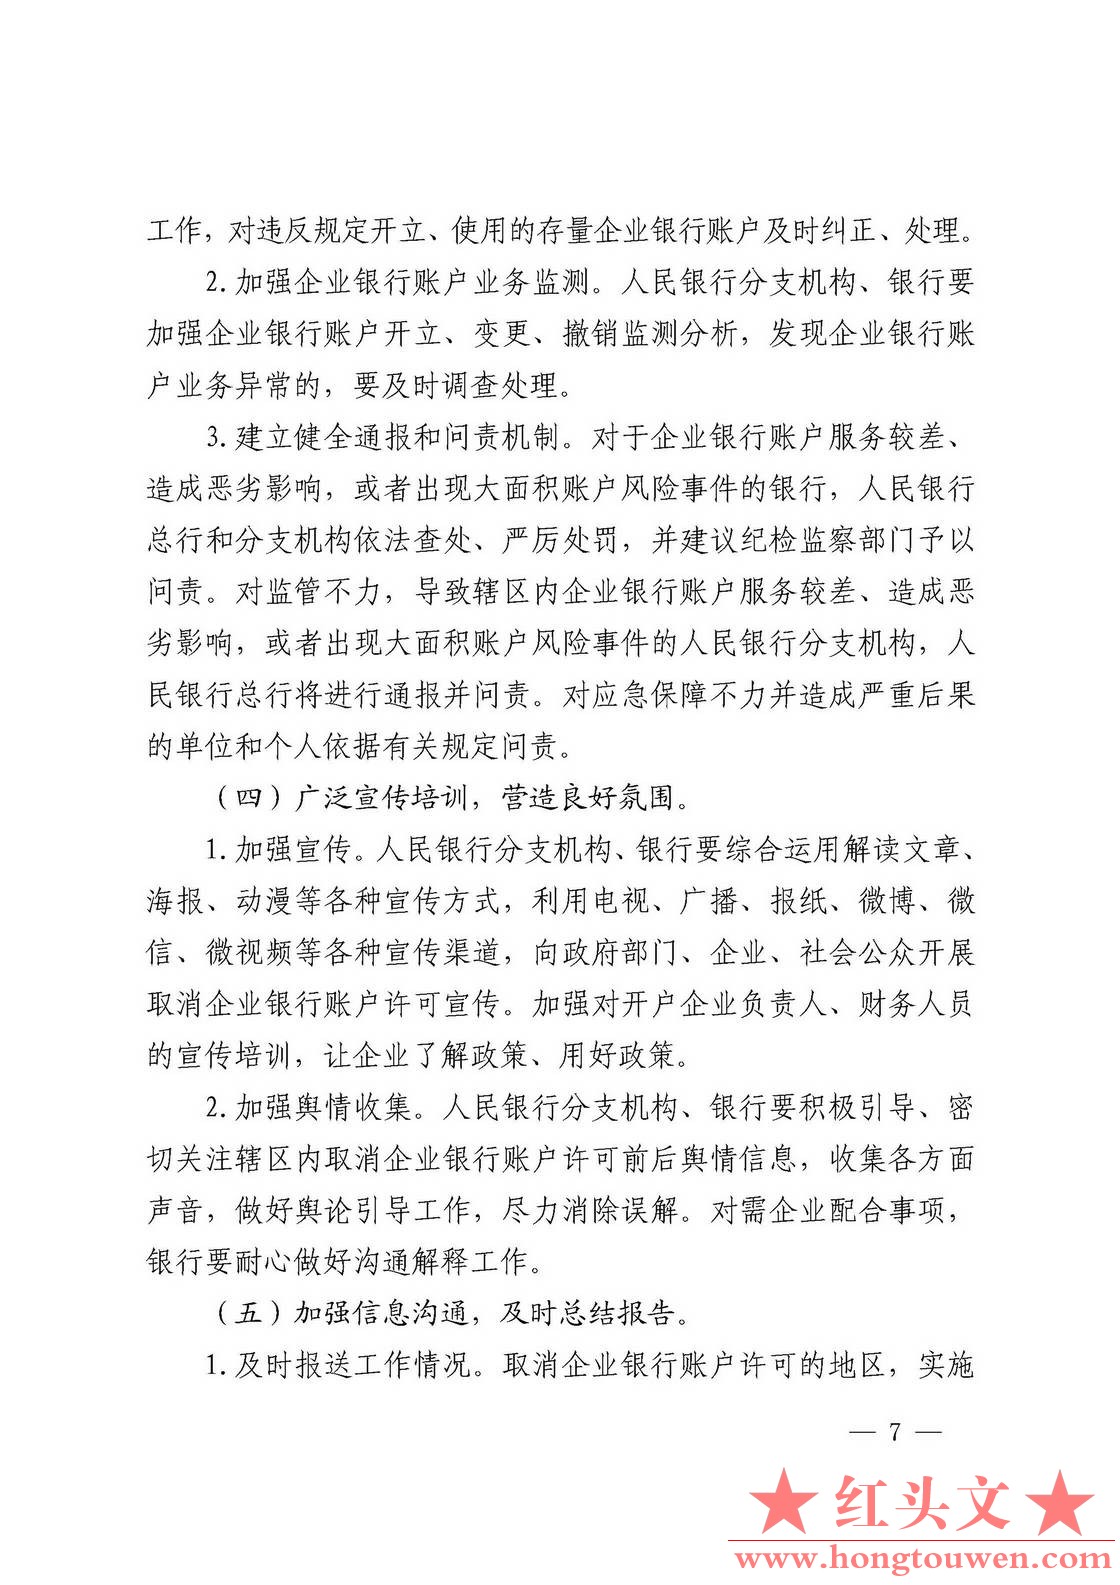 银发[2019]41号-中国人民银行关于取消企业银行账户许可的通知_页面_07.jpg.jpg